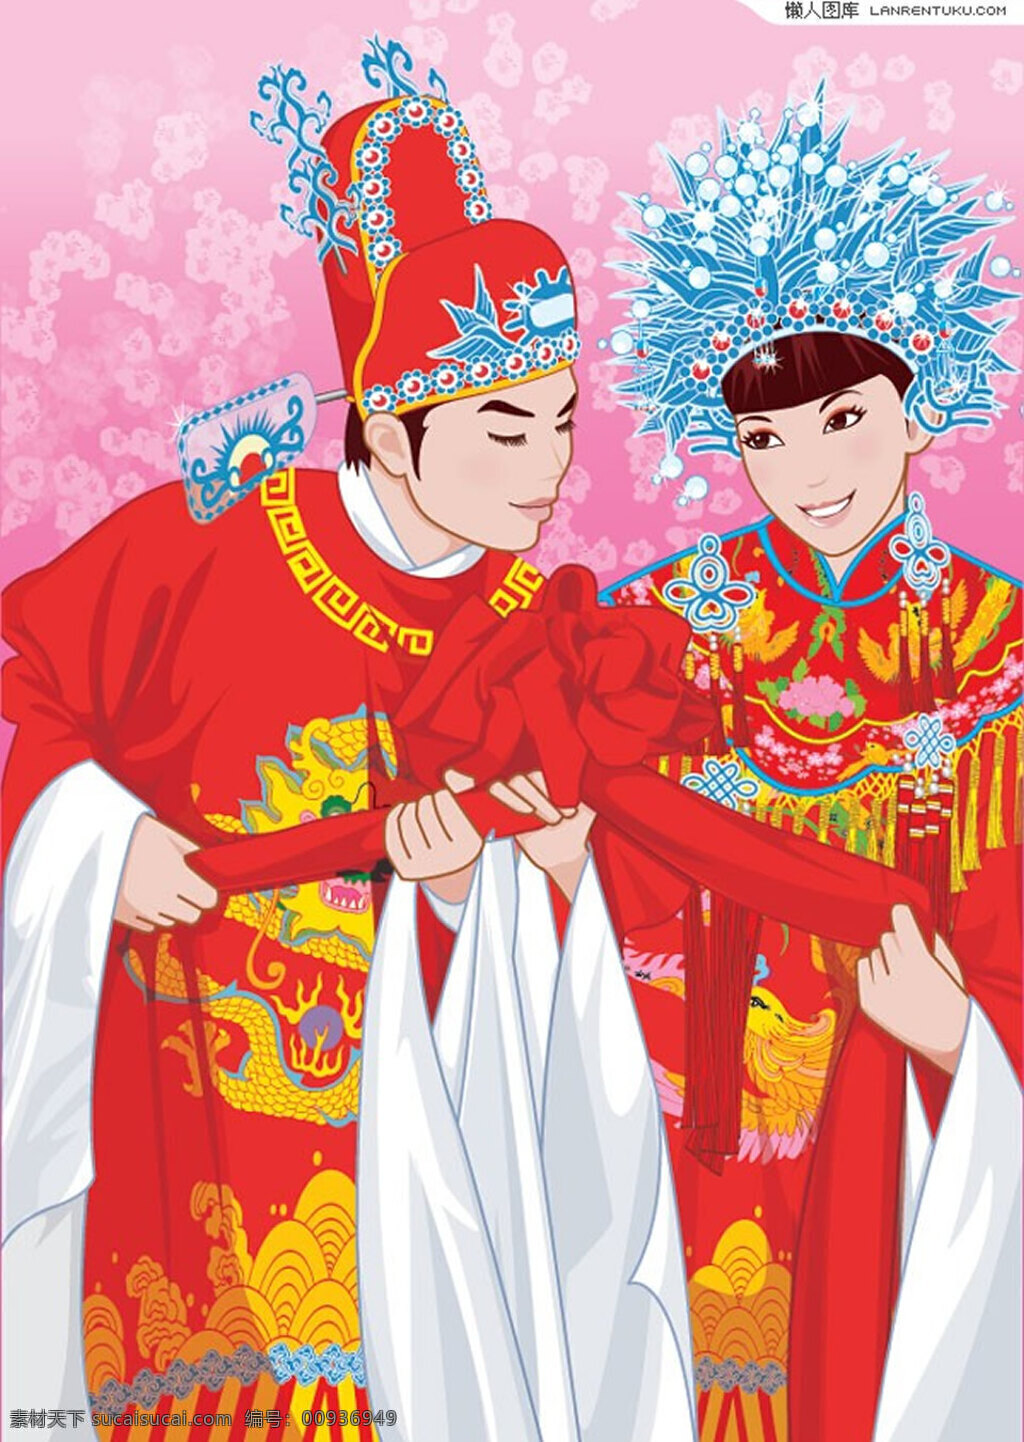 插画 中国 婚庆 传统 服饰 婚庆素材 中国传统服饰 新郎传统服饰 新娘传统服饰 结婚插画 矢量素材 红色